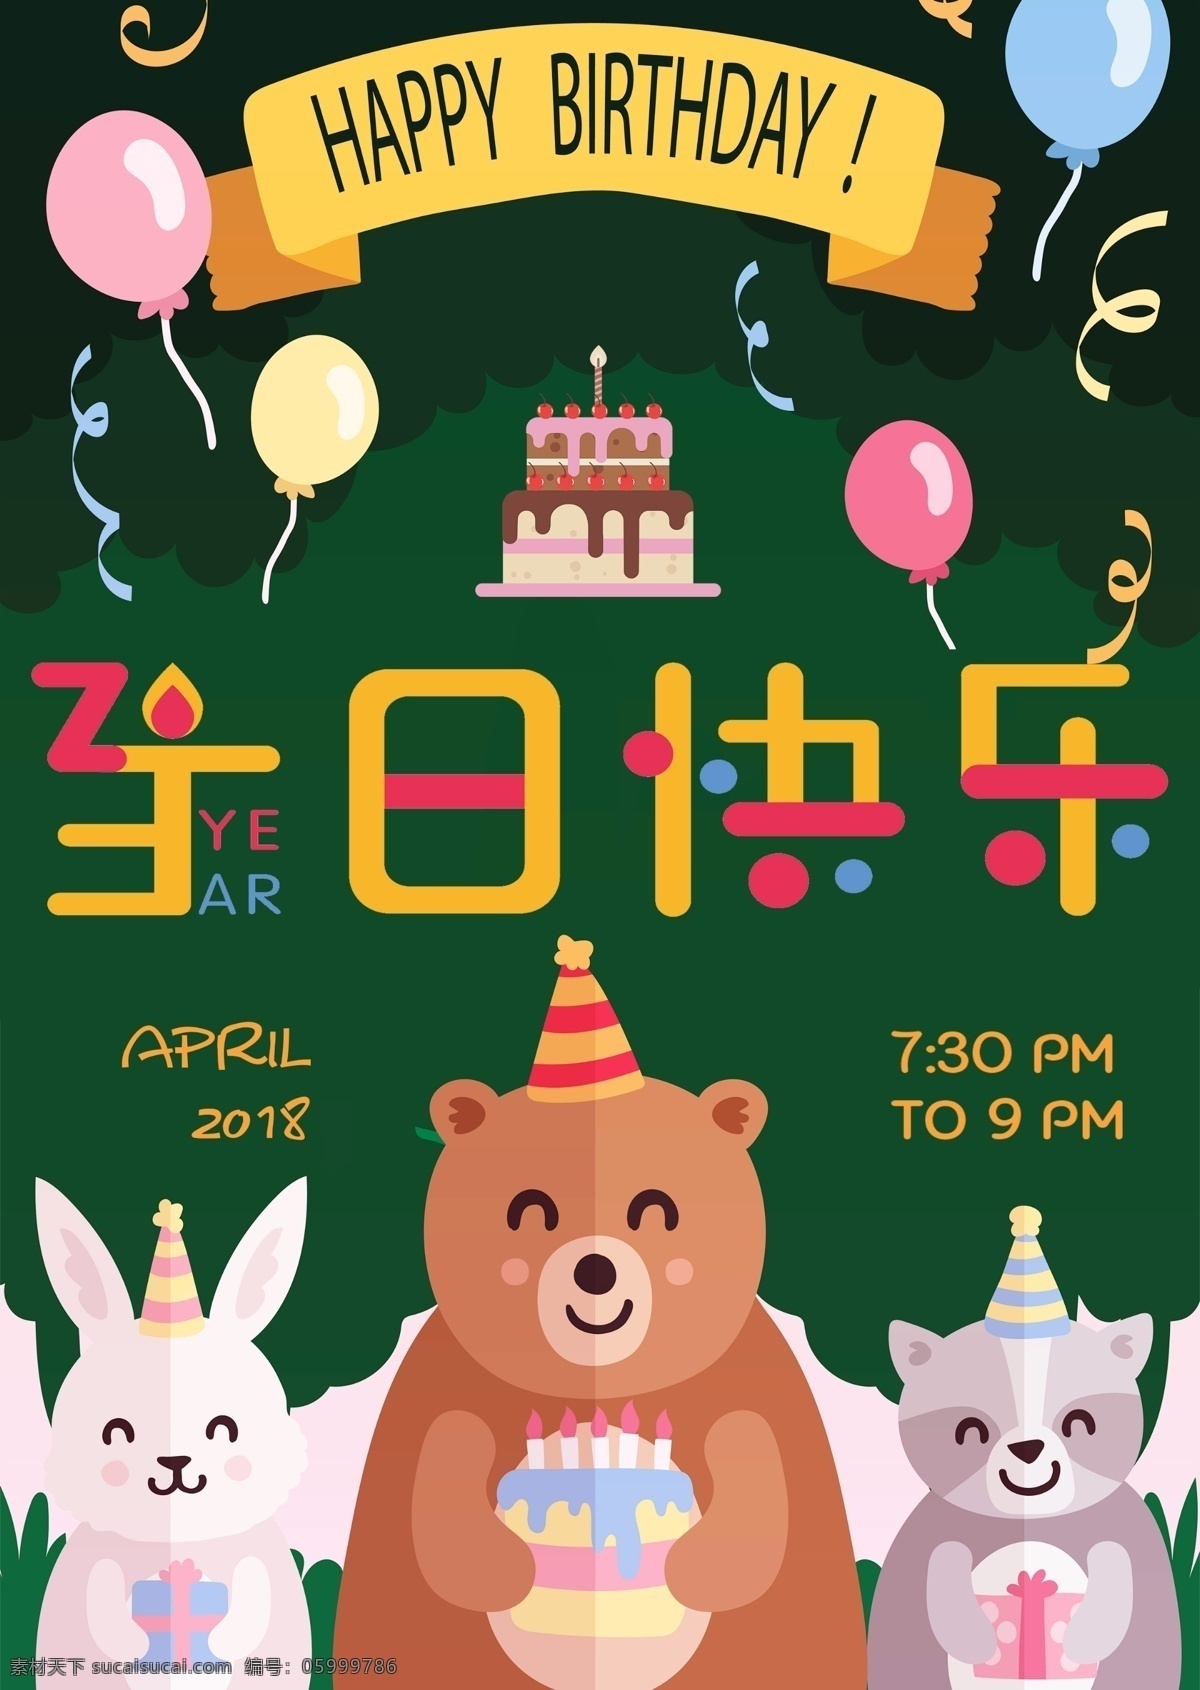 熊熊 森林 生日 海报 可爱 卡通 快乐 派对 庆祝 庆生 birthday 蛋糕蛋糕 生日海报 party